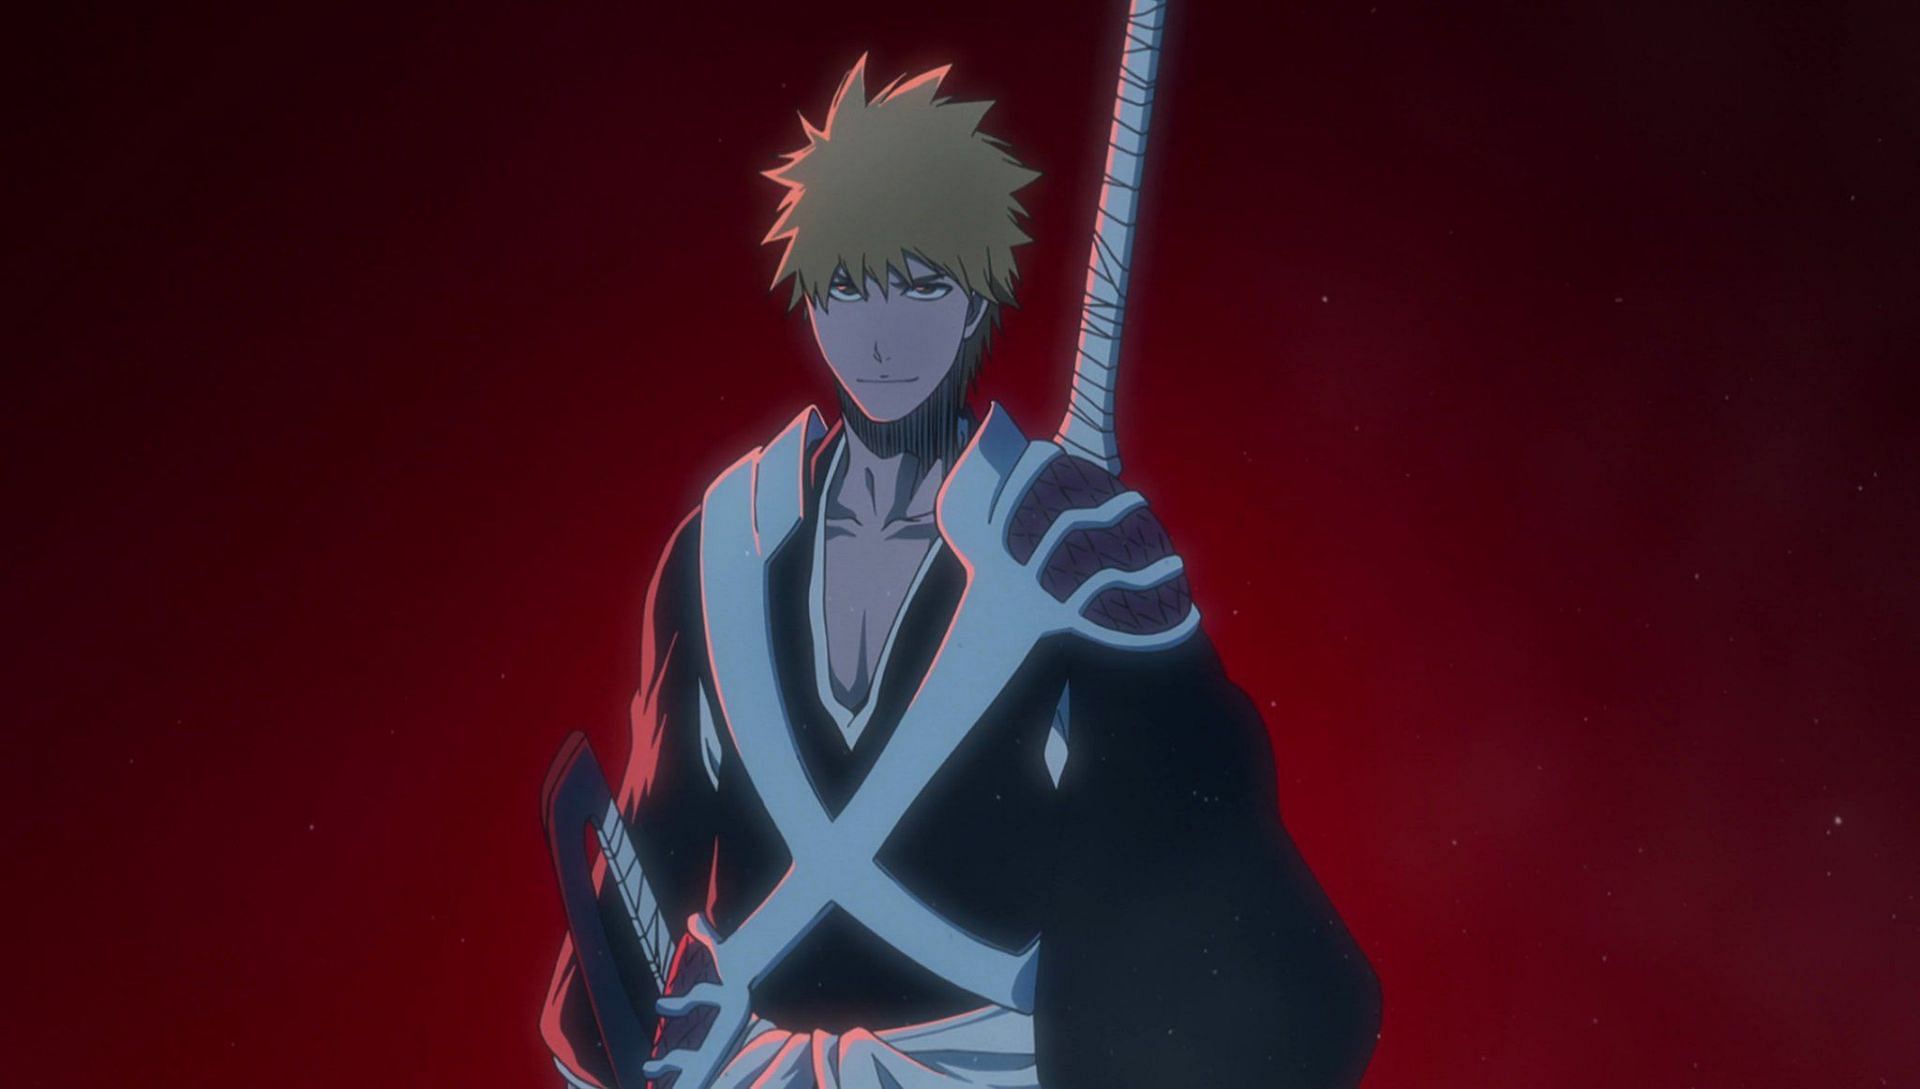 Ichigo as seen in the episode (Image via Pierrot)